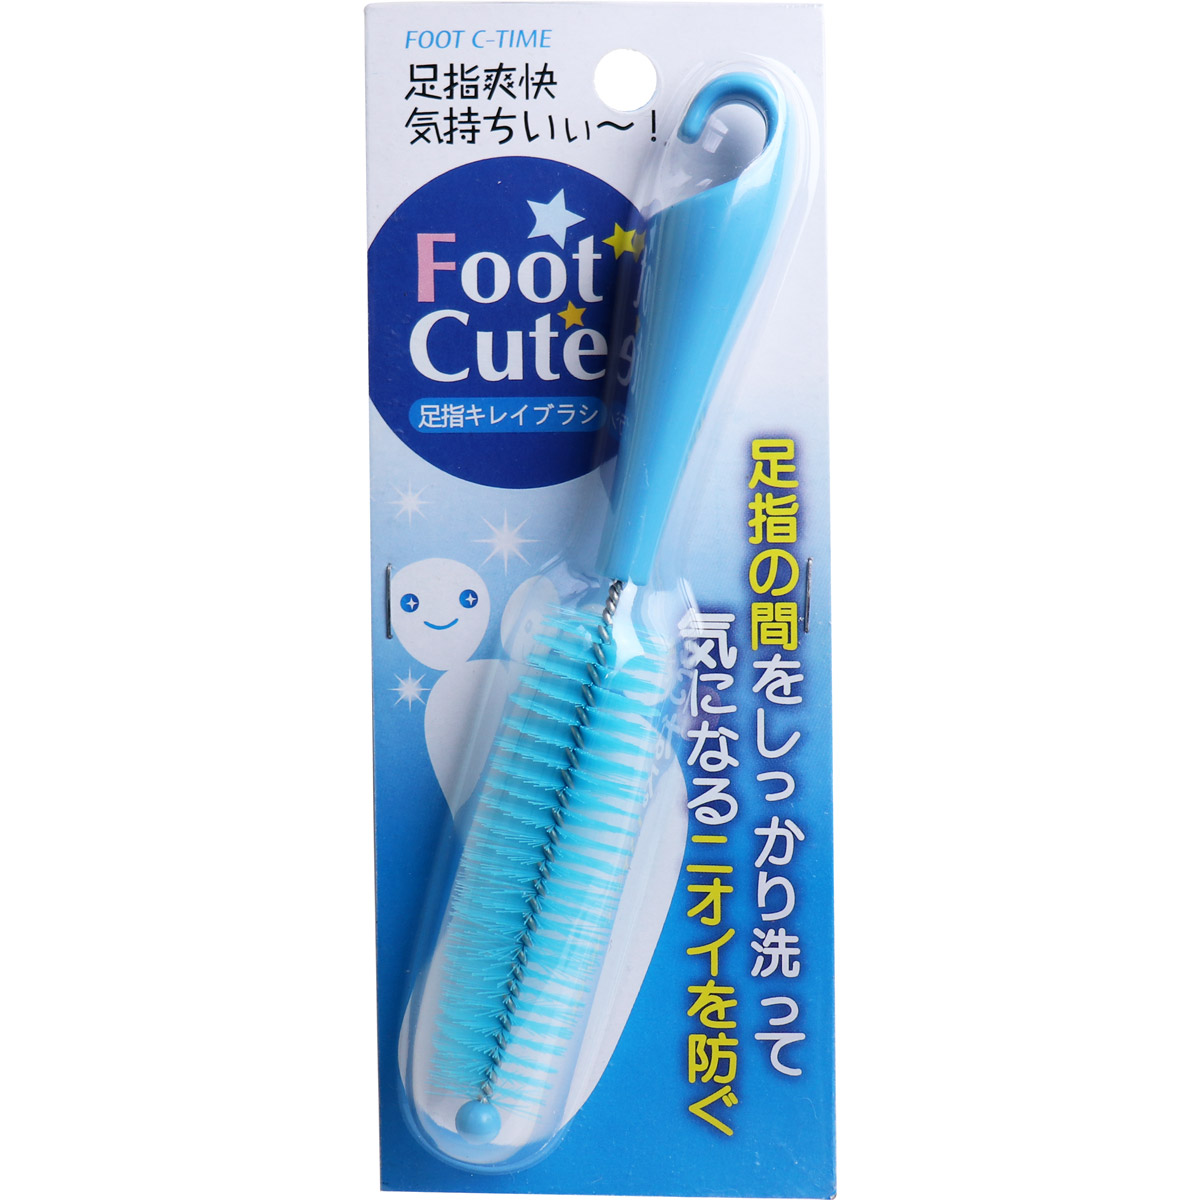 [廃盤] Foot Cute 足指キレイブラシ ブルー C-819